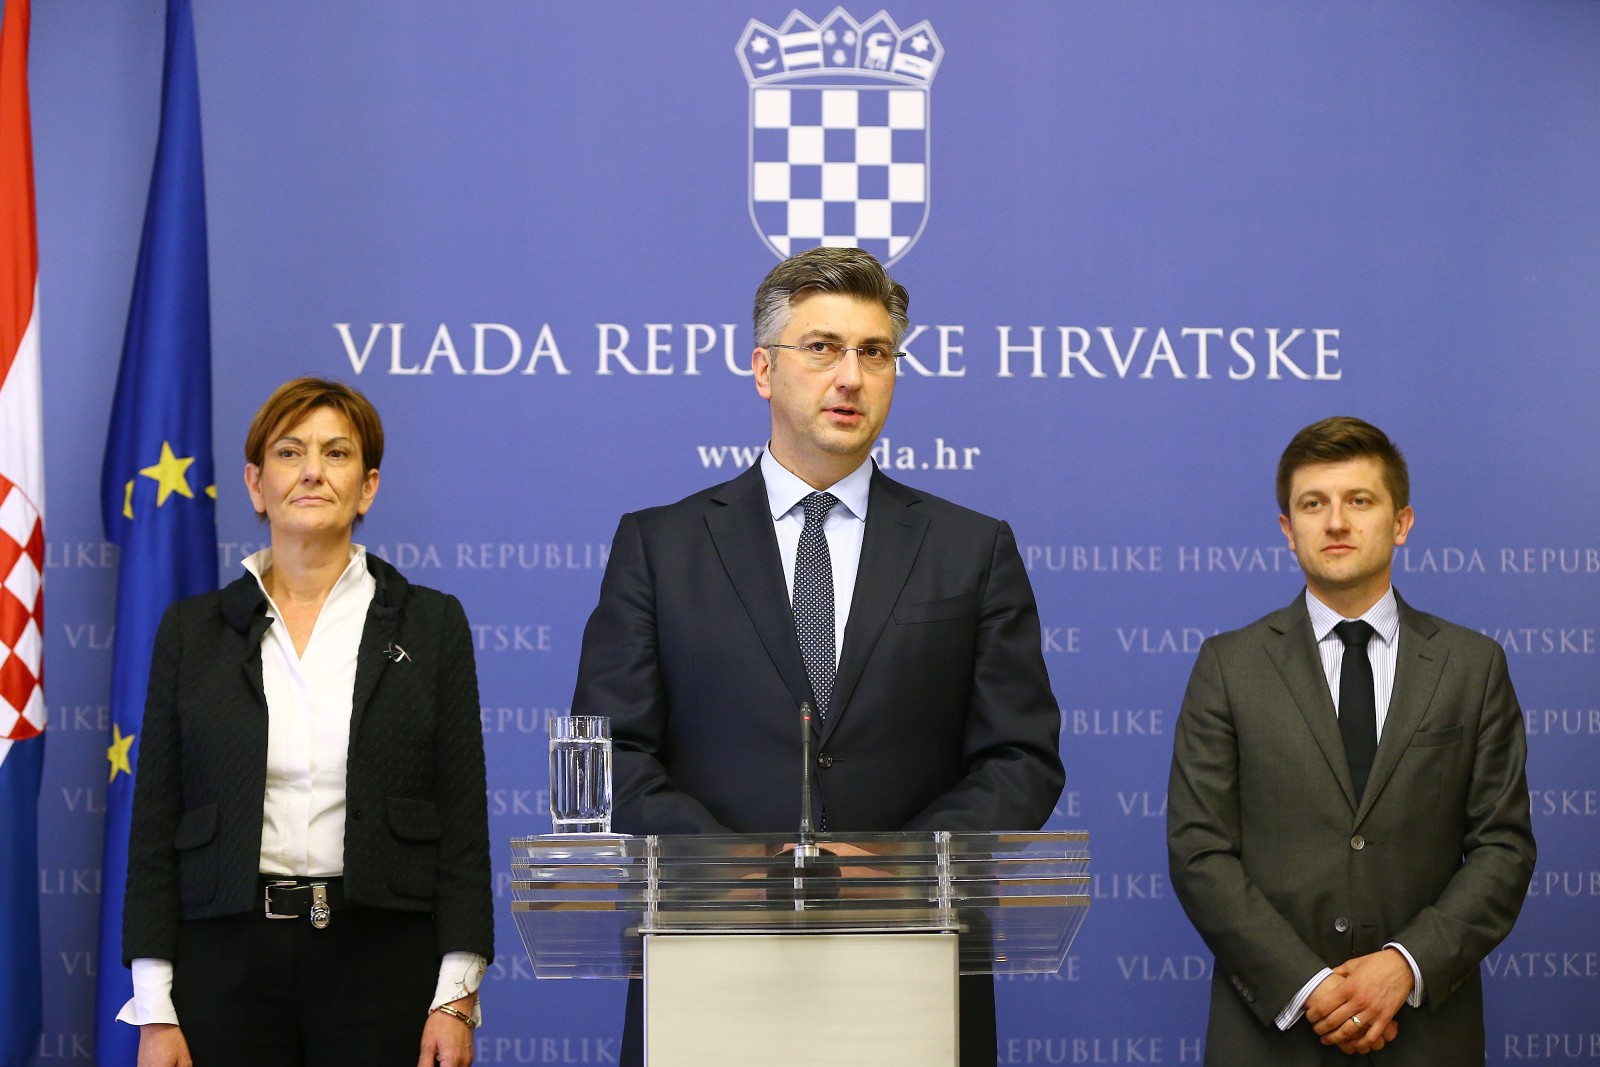 Premijer Plenković: Oporba je doživjela politički poraz, Vlada je funkcionalna i nastavlja rješavati probleme